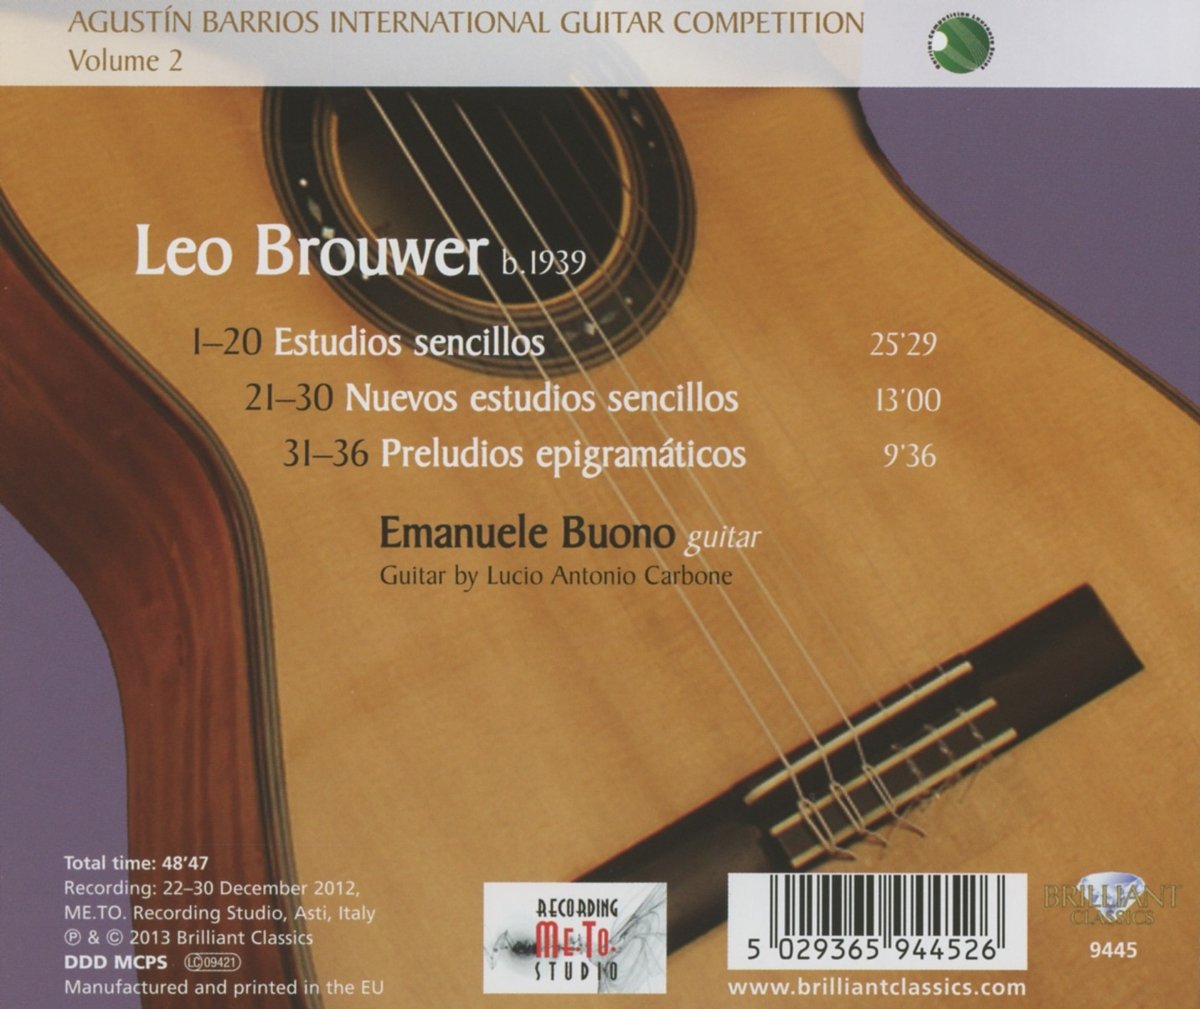 BROUWER: Estudios Sencillos, Preludios Epigramaticos - Emanuele Buono (guitar)